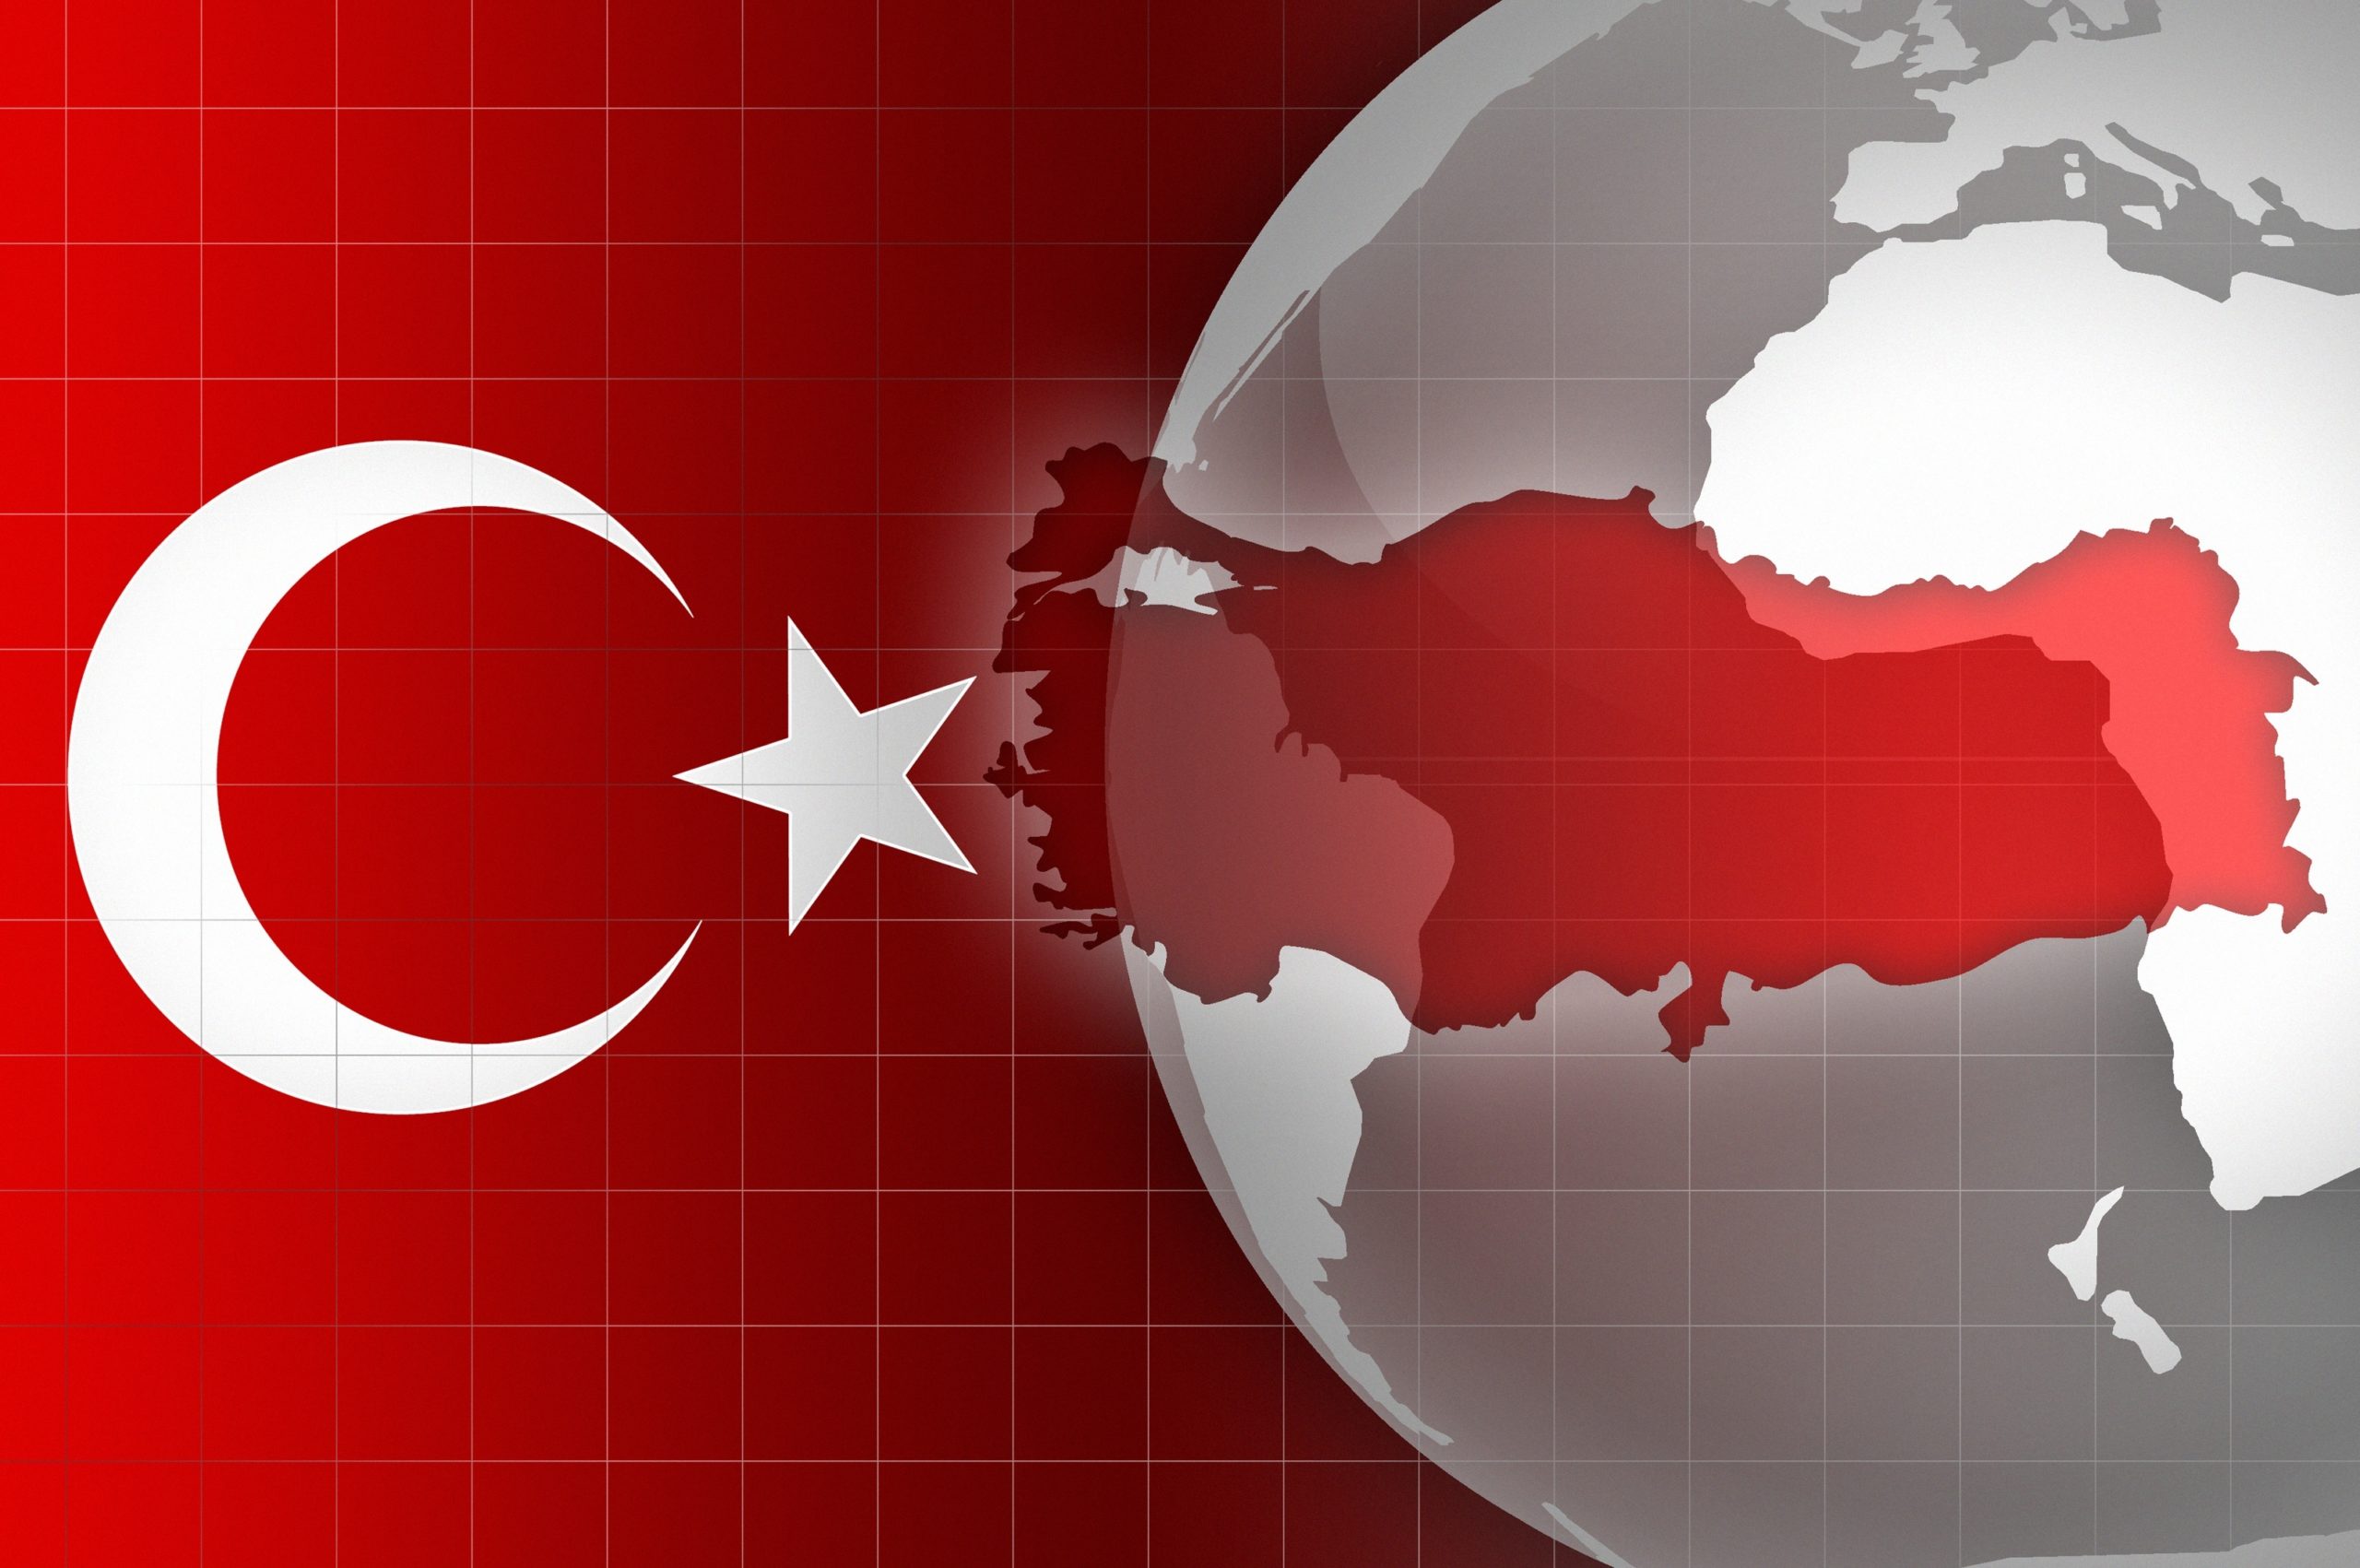  Turquia deporta missionários por “ameaçarem segurança nacional”